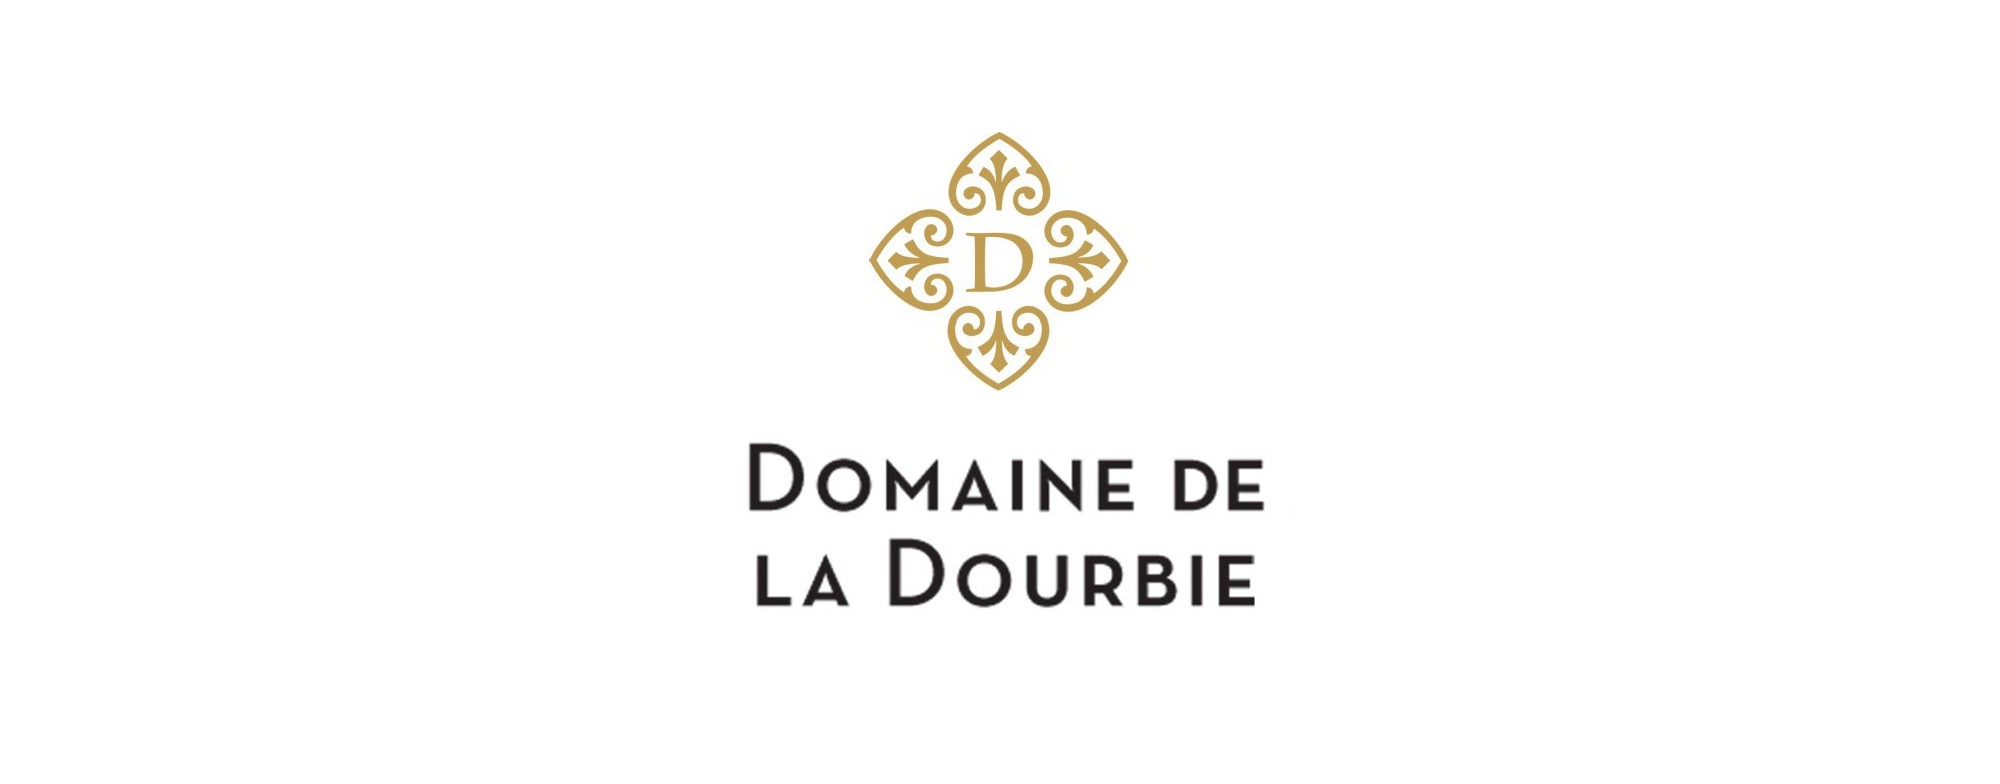 Domaine de la Dourbie - Florian Falguières 